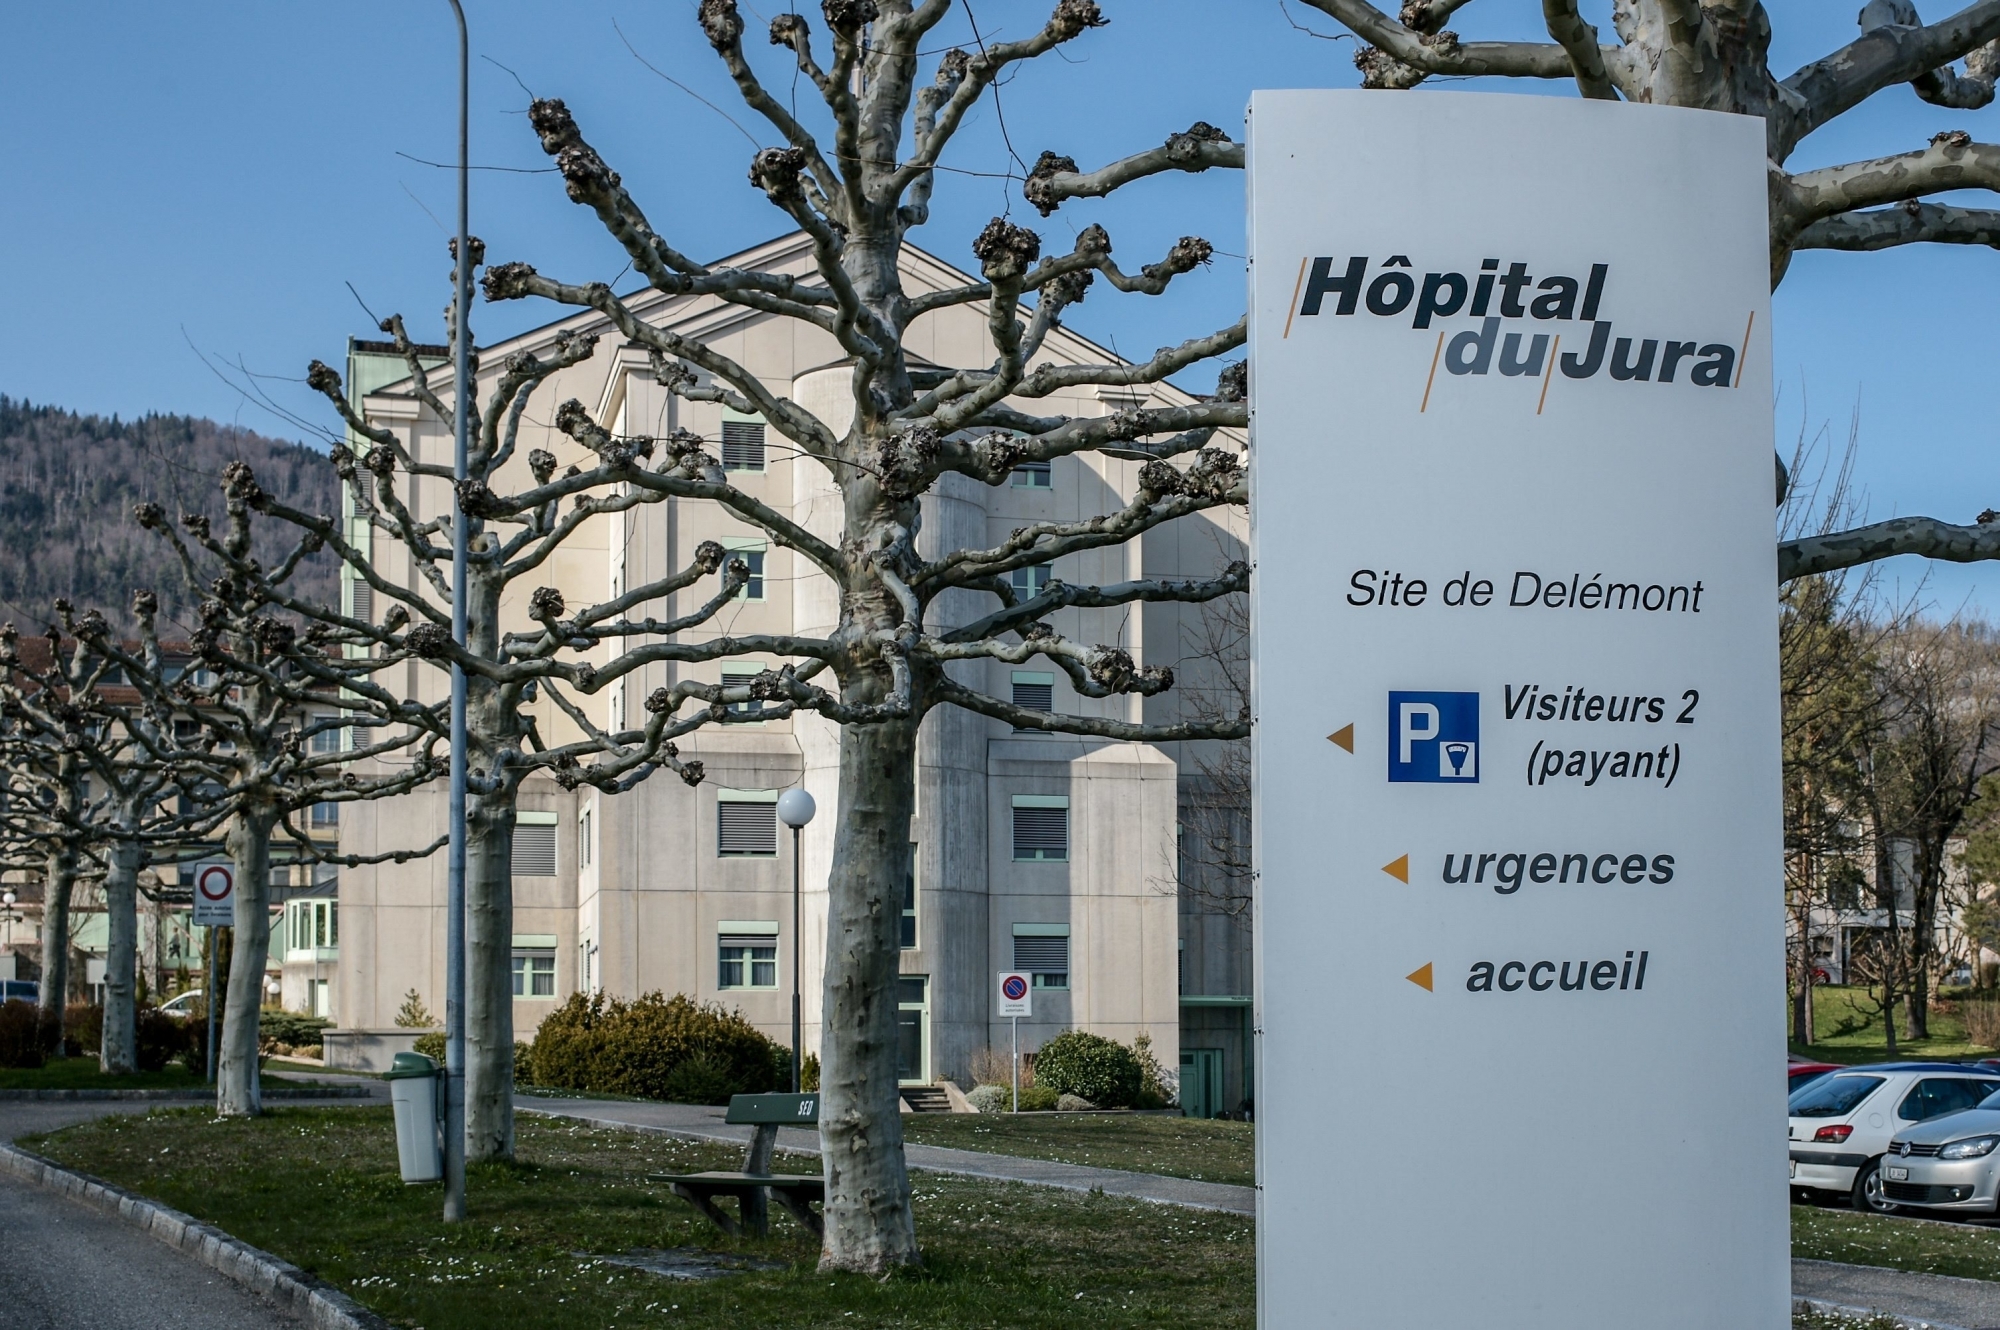 Le fait de n'avoir qu'un seul site de soins aigus (ici à Delémont) est un avantage pour gérer la crise sanitaire dans le canton du Jura.